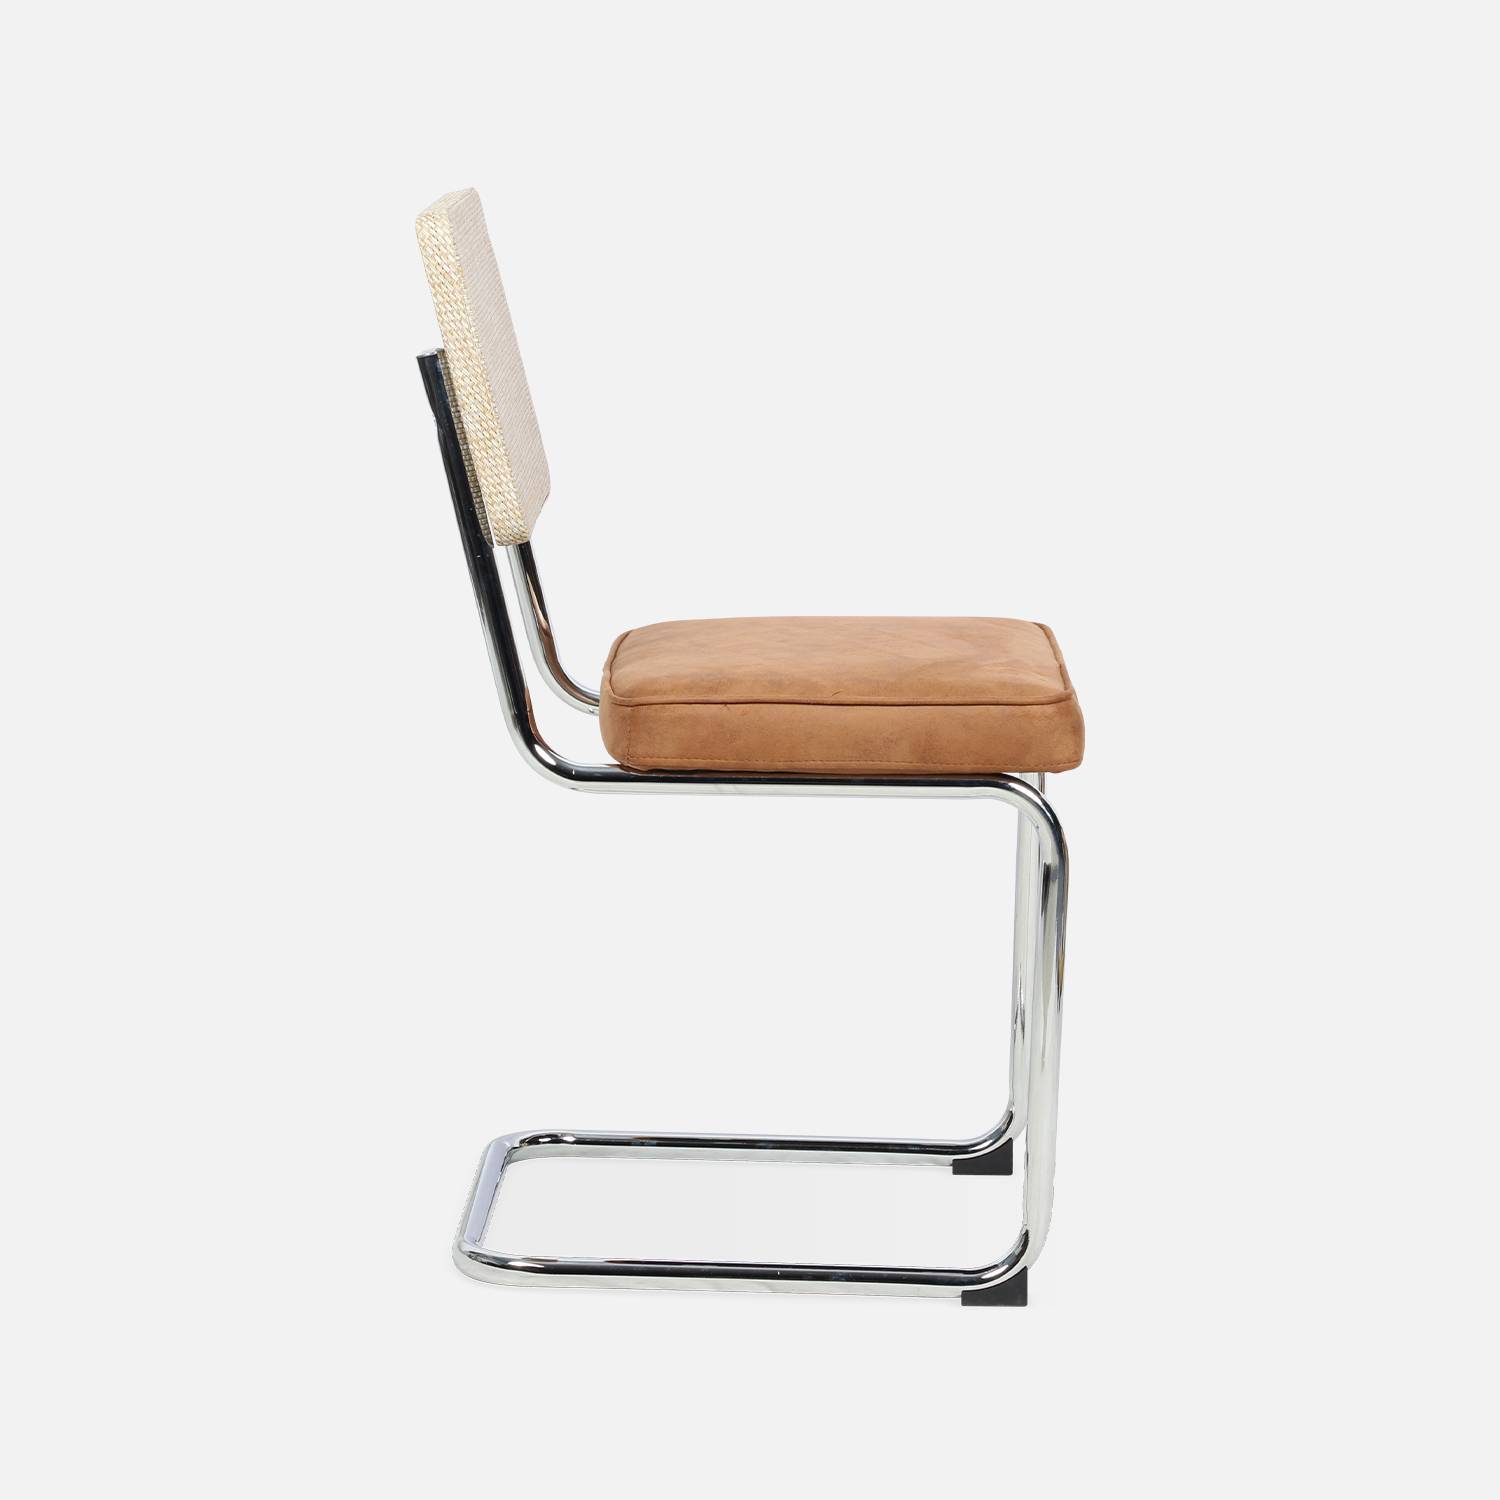 2 cadeiras cantilever - Maja - tecido castanho claro e resina com efeito rattan, 46 x 54,5 x 84,5 cm Photo6